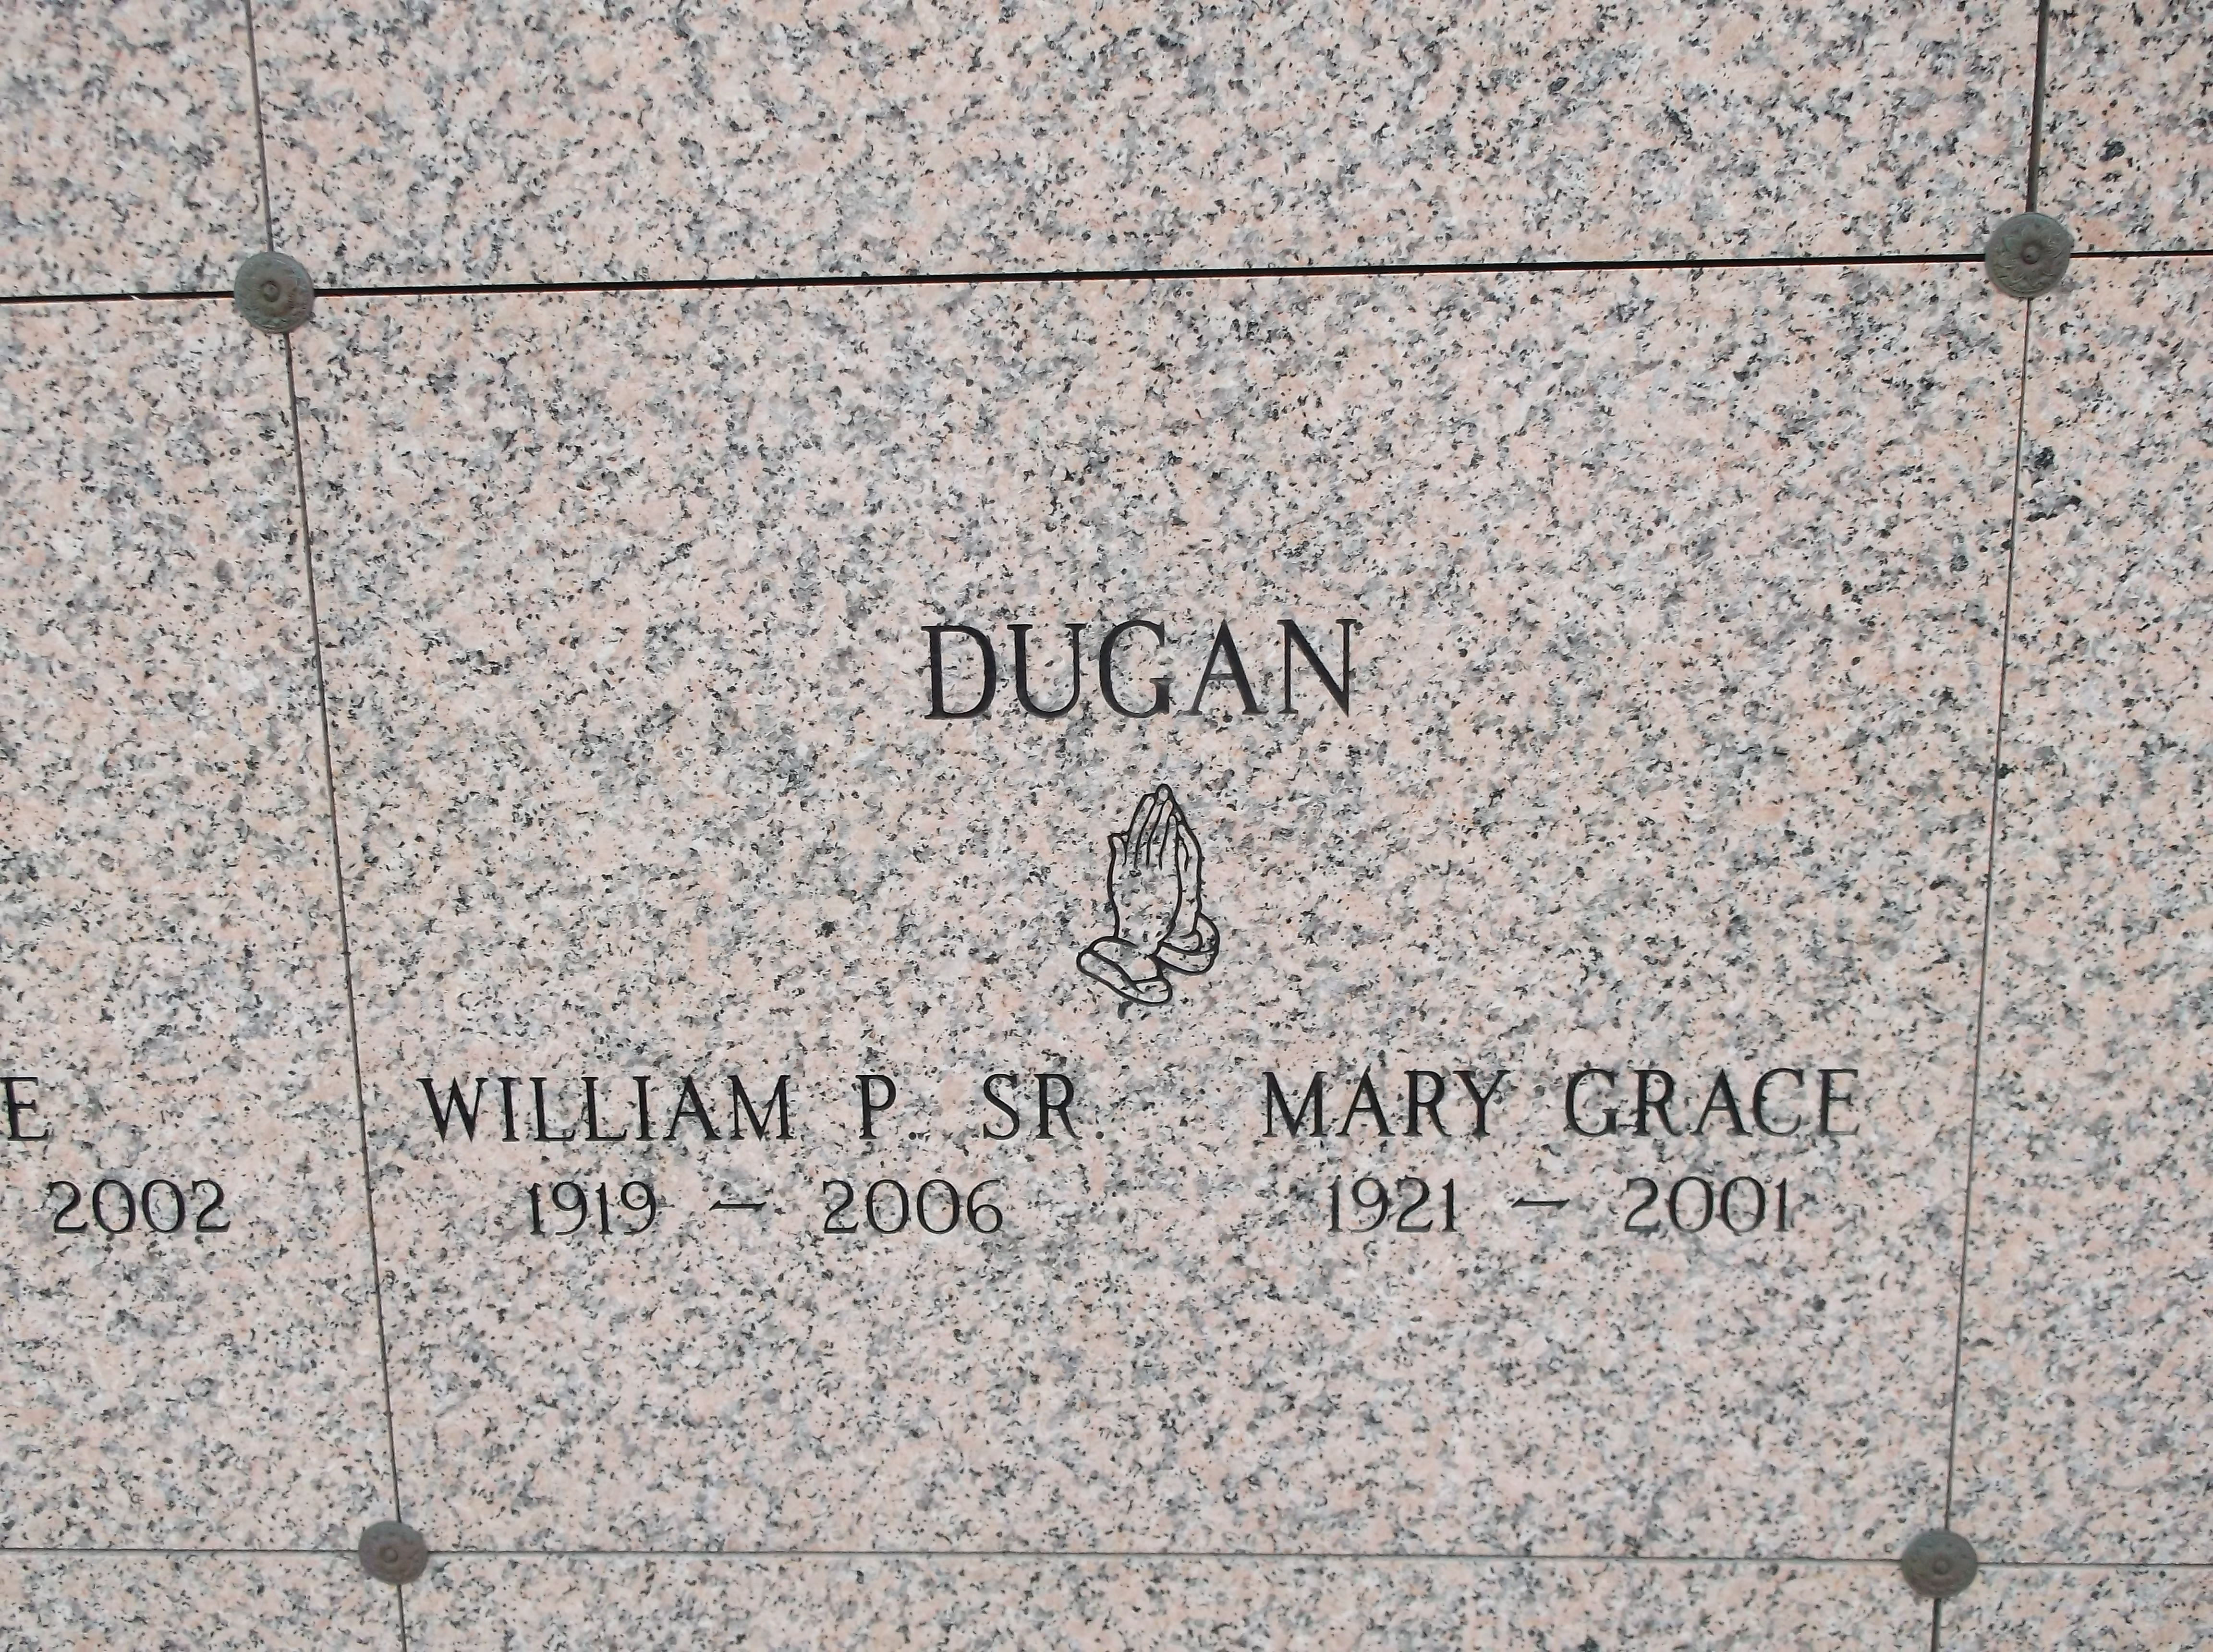 William P Dugan, Sr